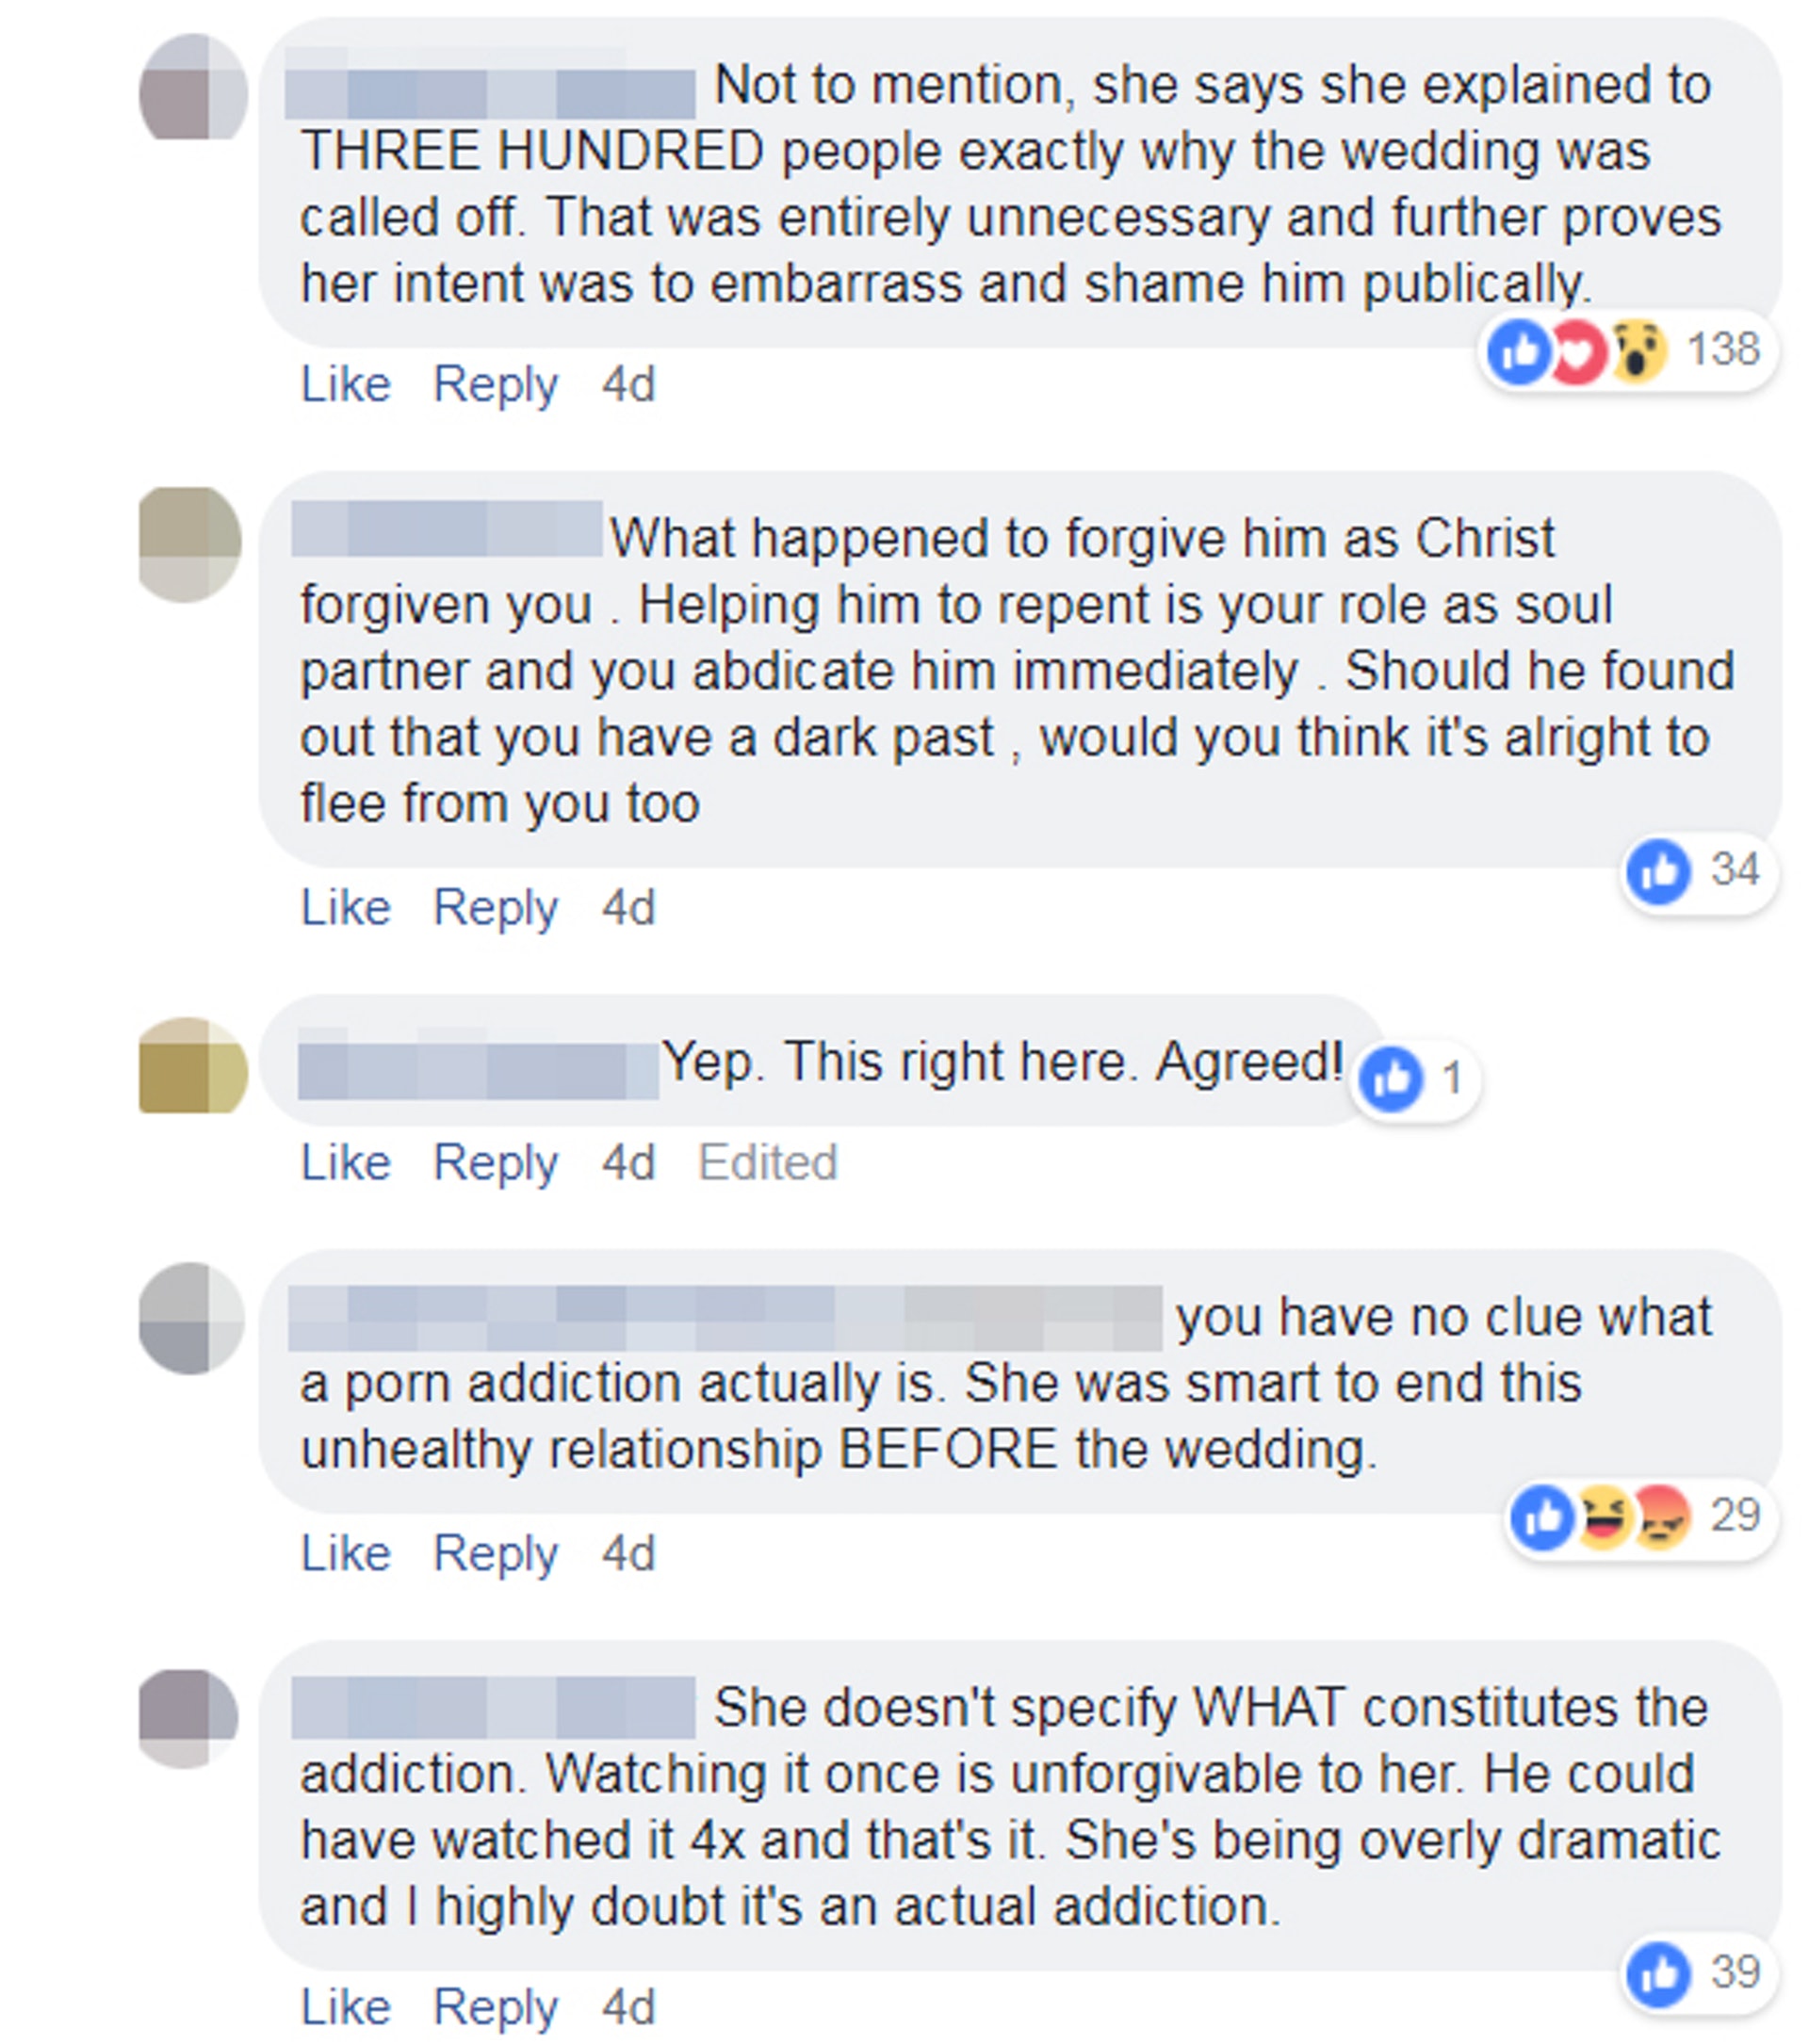 有網民指克萊爾目的是「公開羞辱前未婚夫」，不過，都有網民力撐克萊爾，指其他人不明白色情影片成癮的問題，她在結婚前結束這段不健康的關係，是一個聰明的選擇。（fb專頁「Love What Matters」截圖）